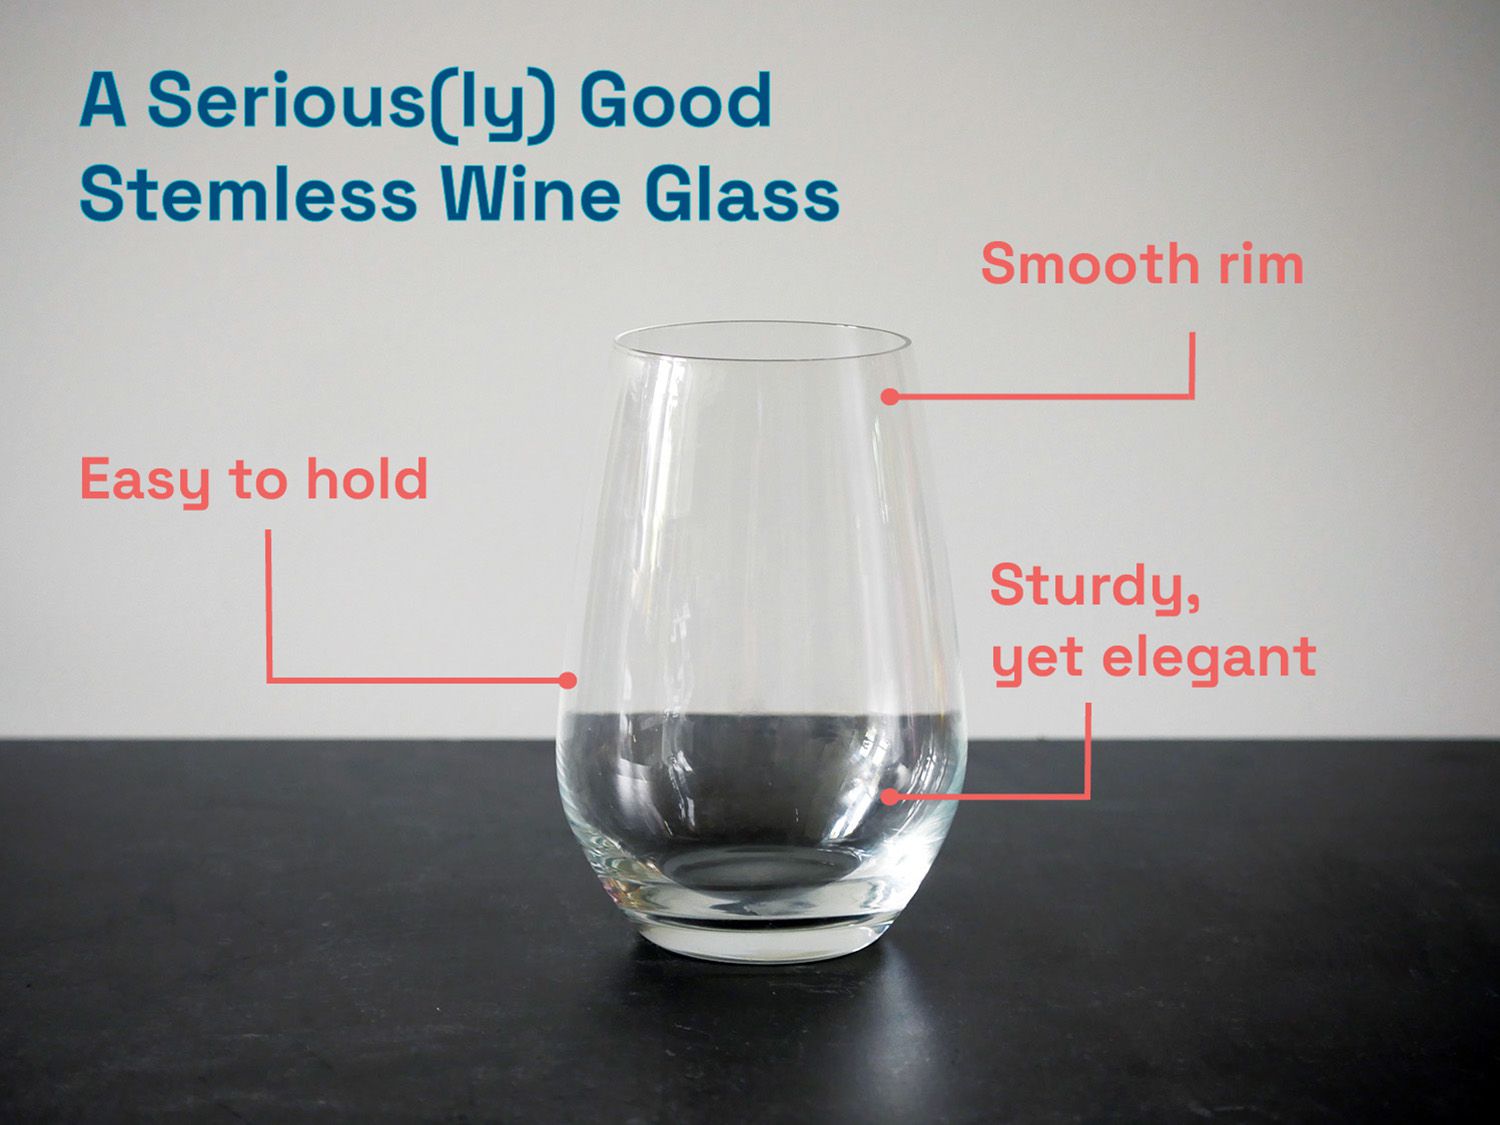 肖特zwiesel葡萄酒杯注释:容易拿，光滑的边缘，和坚固，但优雅